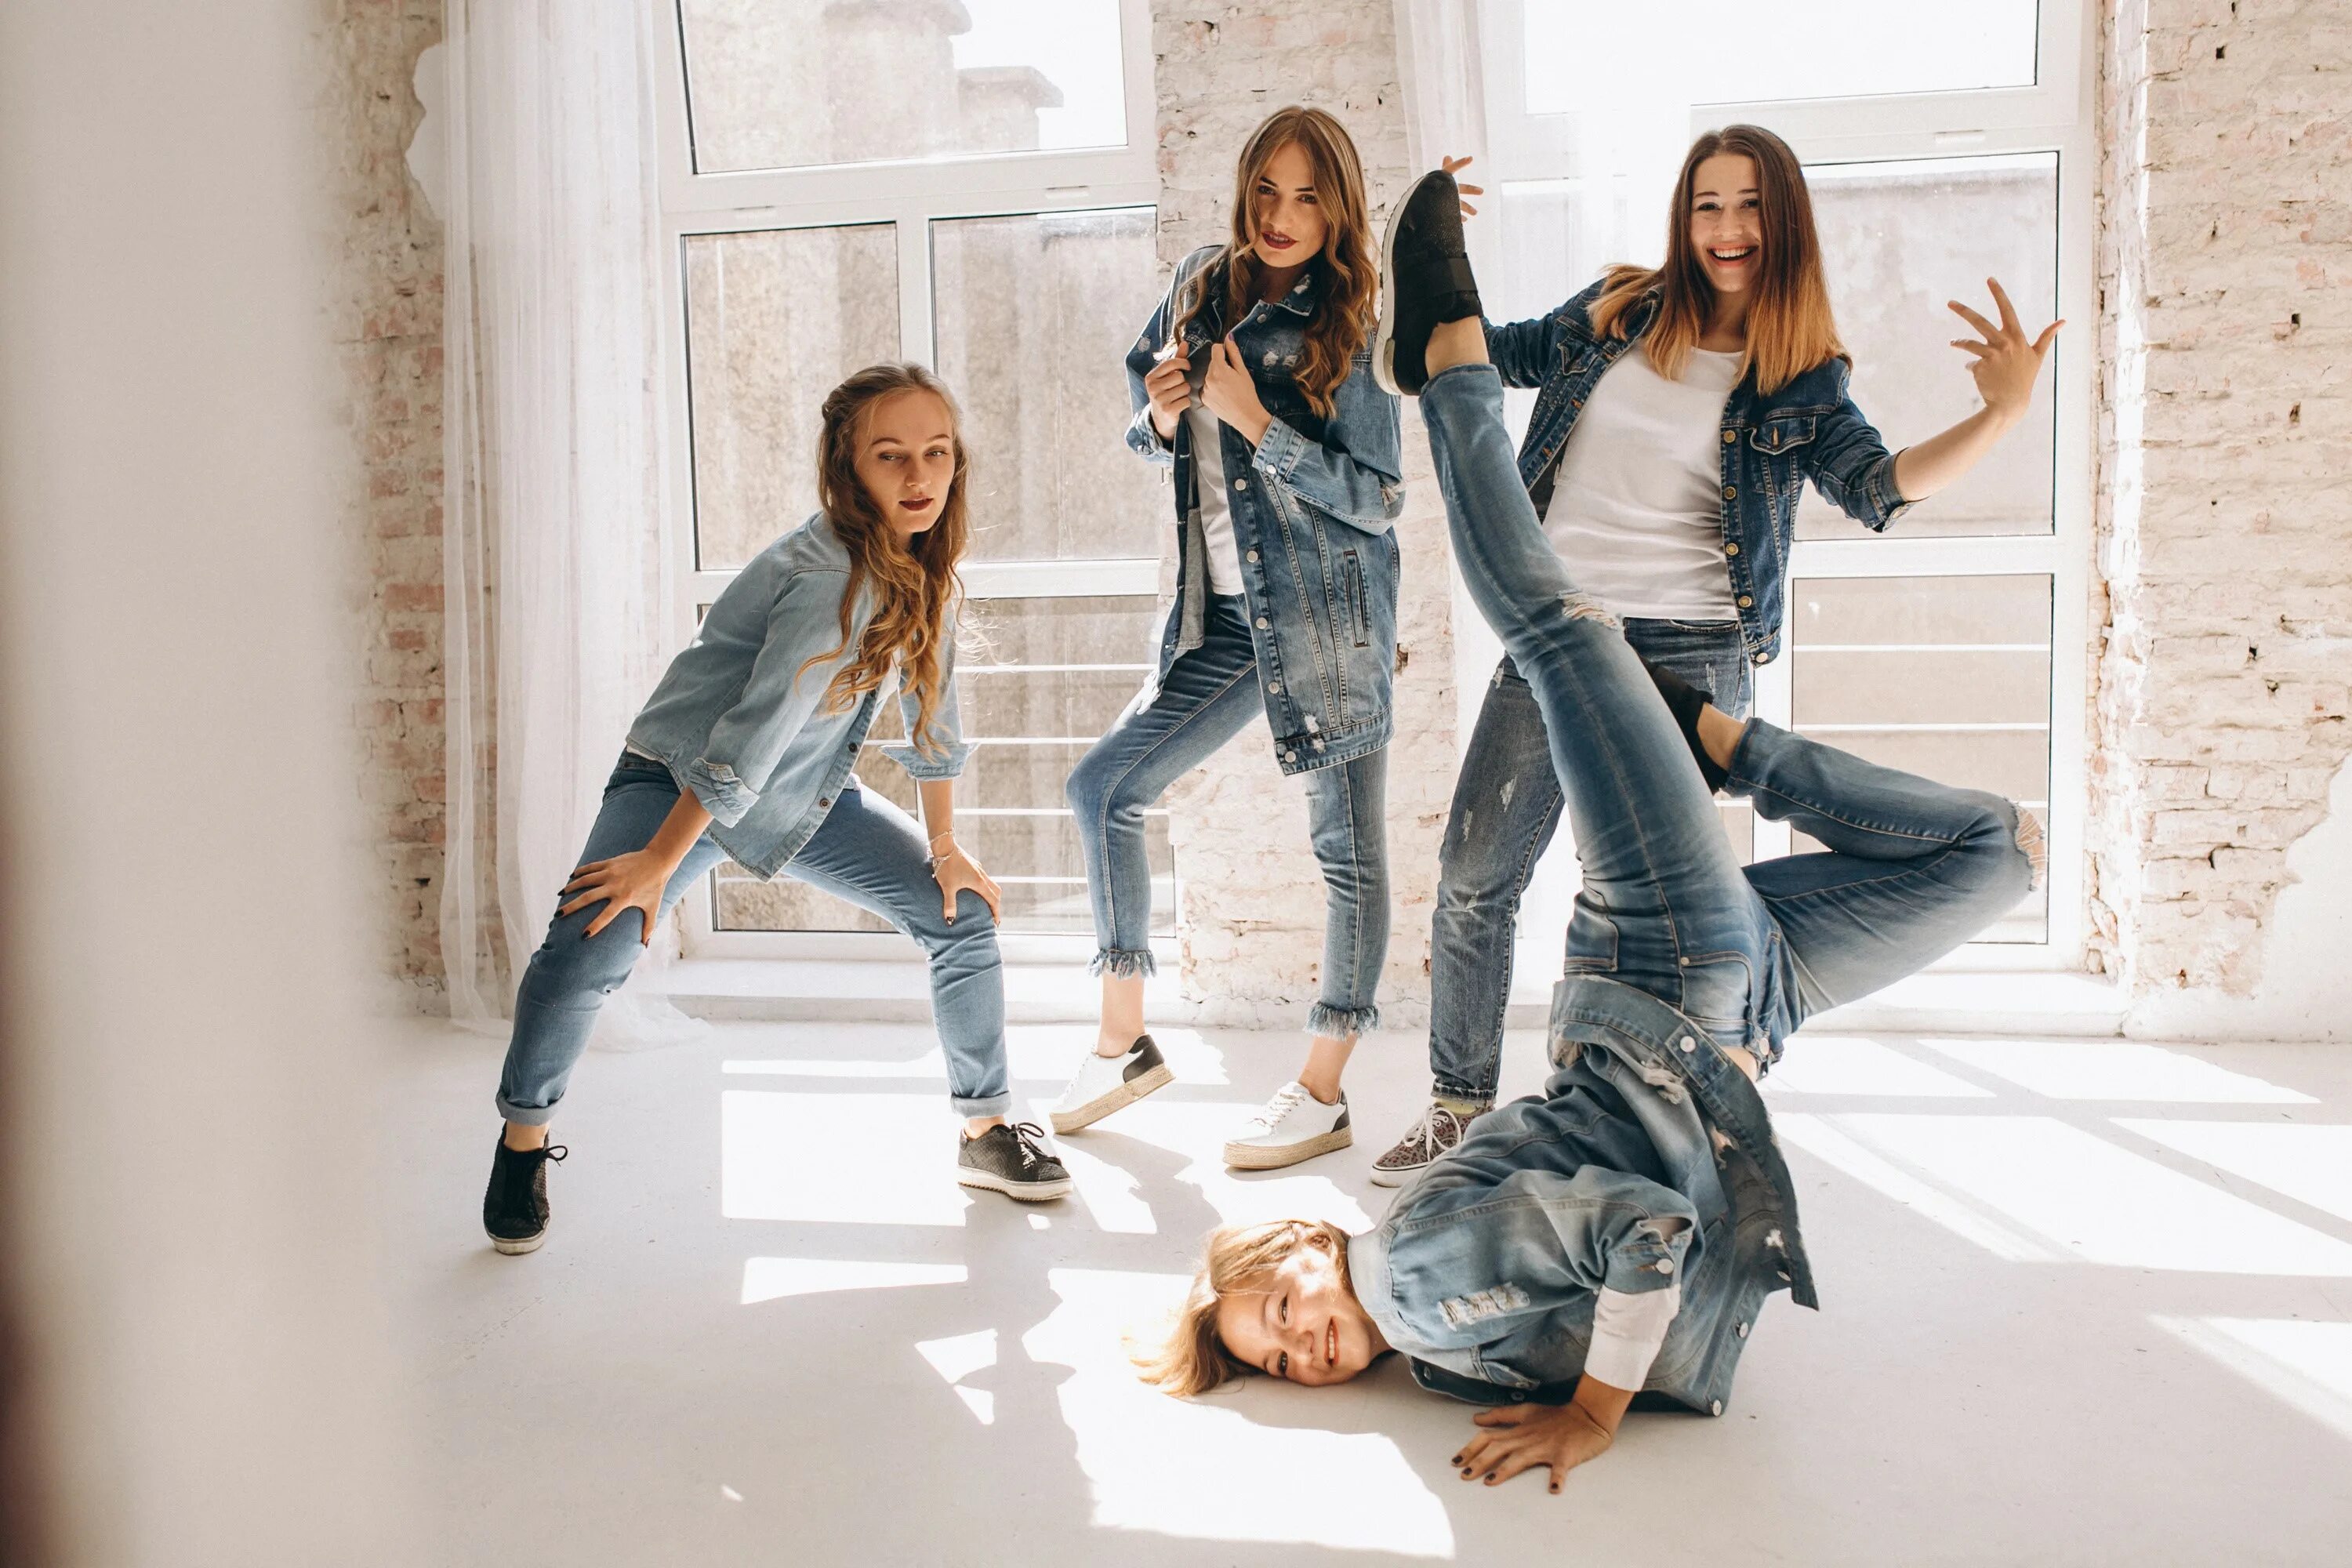 Танц группа. Молодежь в джинсах. Танец девушки в джинсах. Групповая фотосессия в джинсах. Девушка в джинсах танцует.